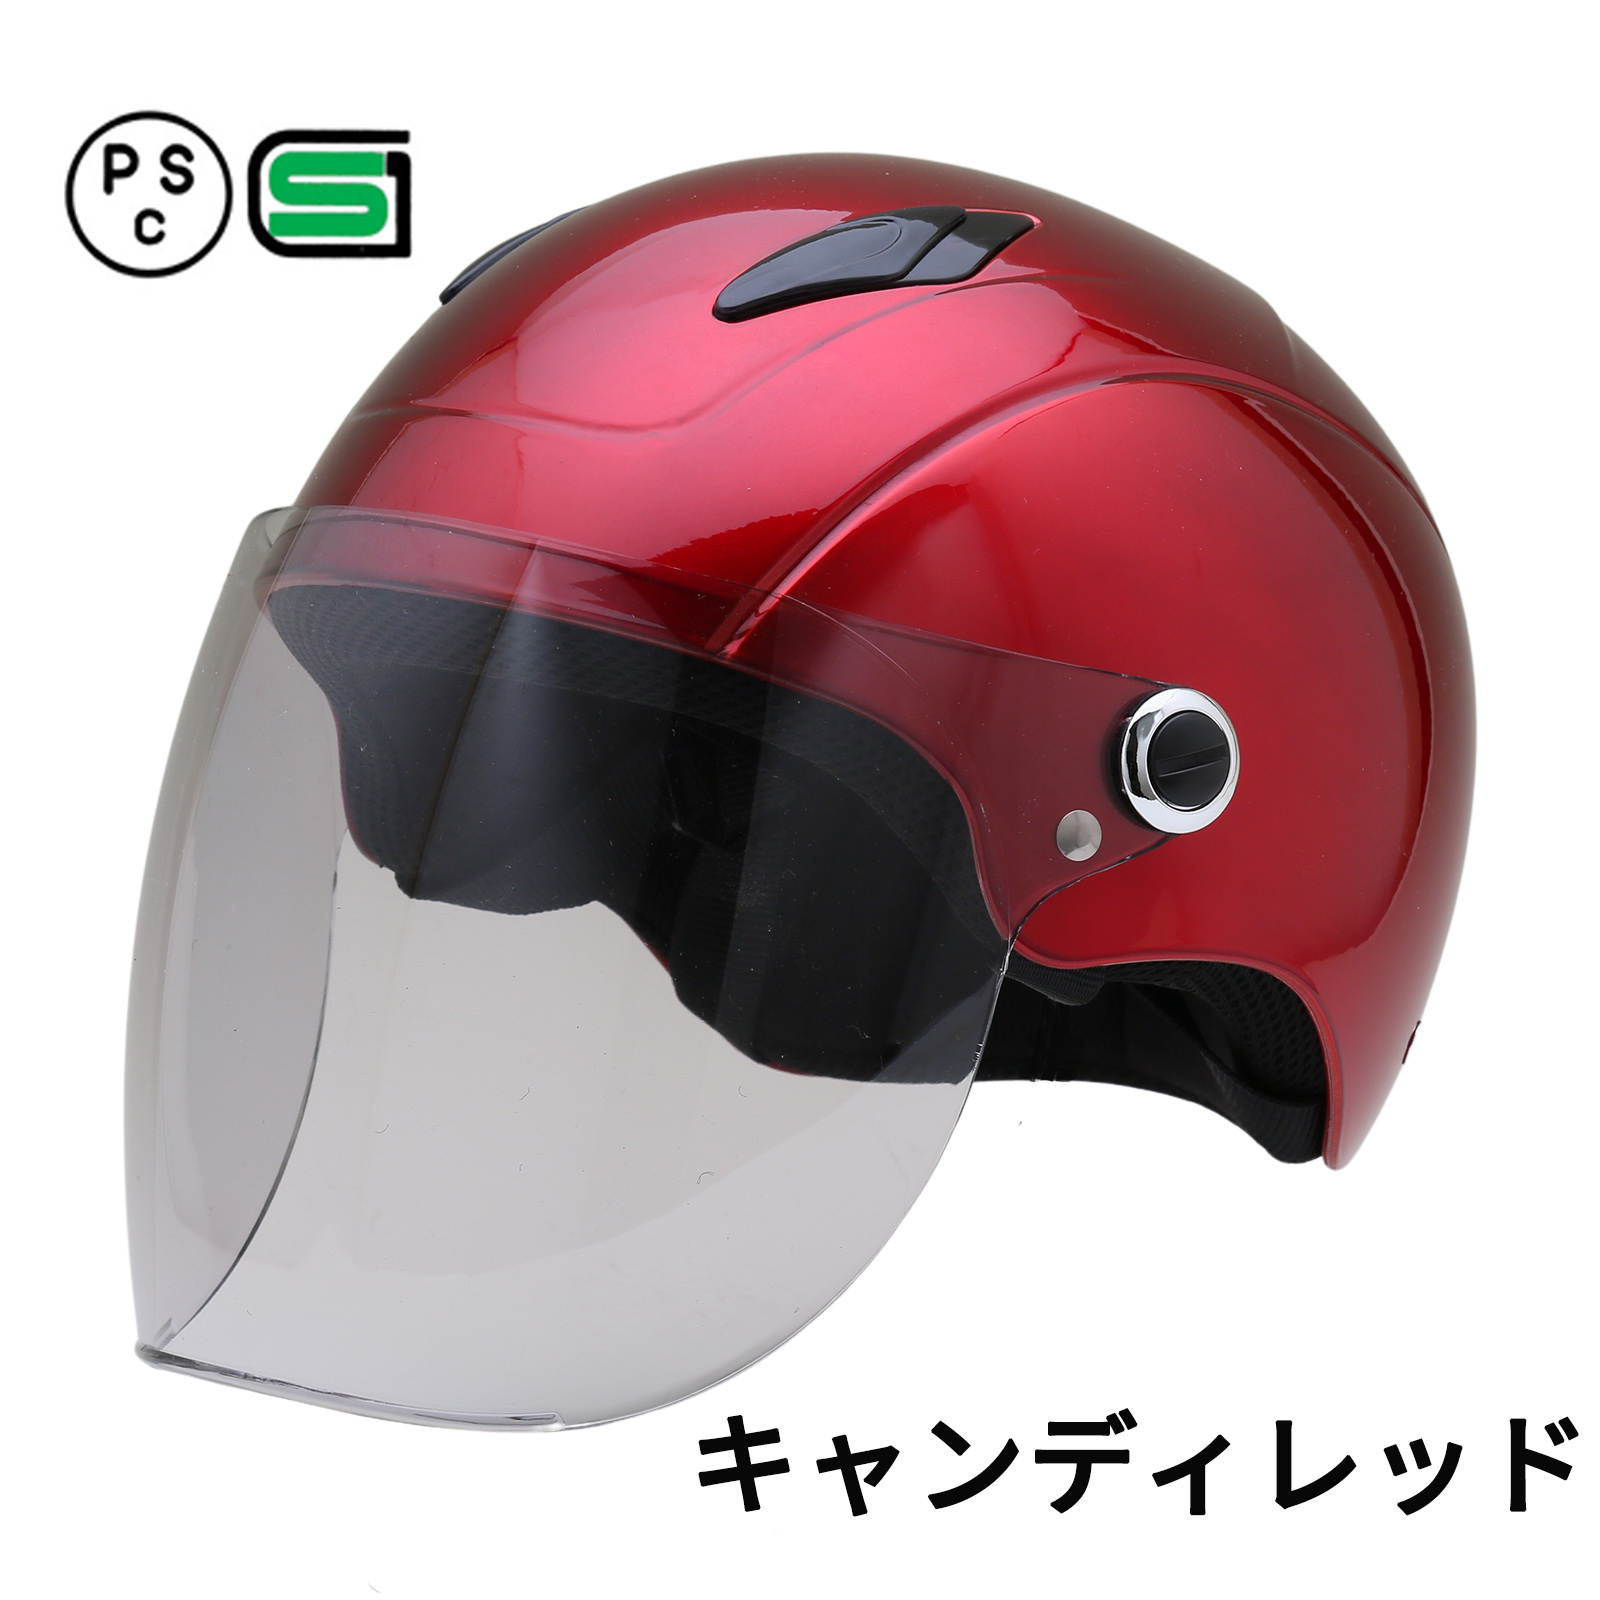 バイク ヘルメット シールド付 ハーフヘルメット KX5 全8色 ハーフヘルメット